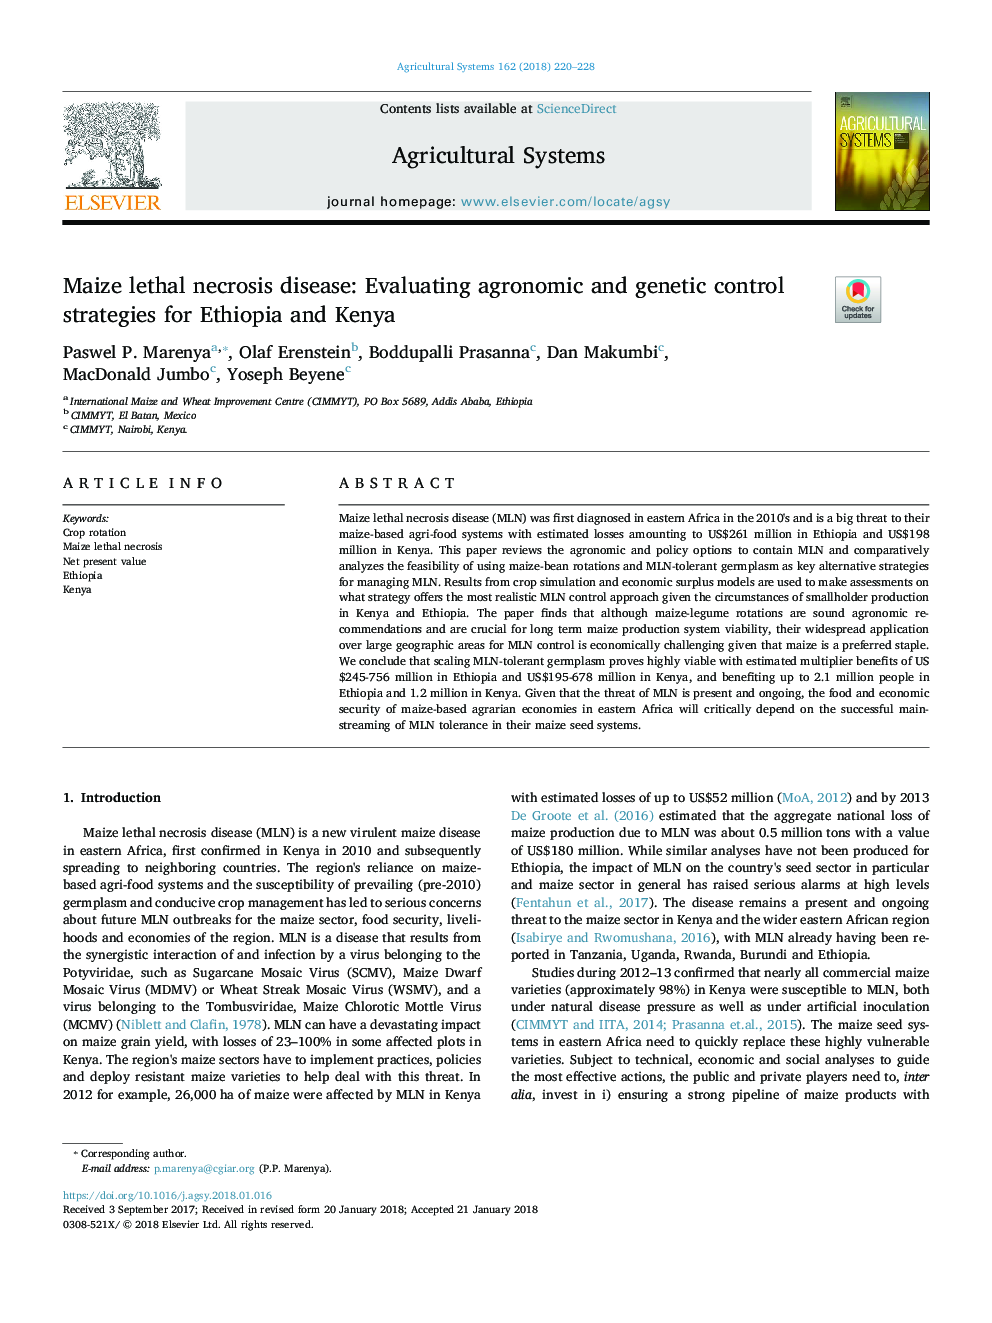 بیماری نکروز مرگبار ذرت: ارزیابی راهکارهای کنترل زراعی و ژنتیکی اتیوپی و 